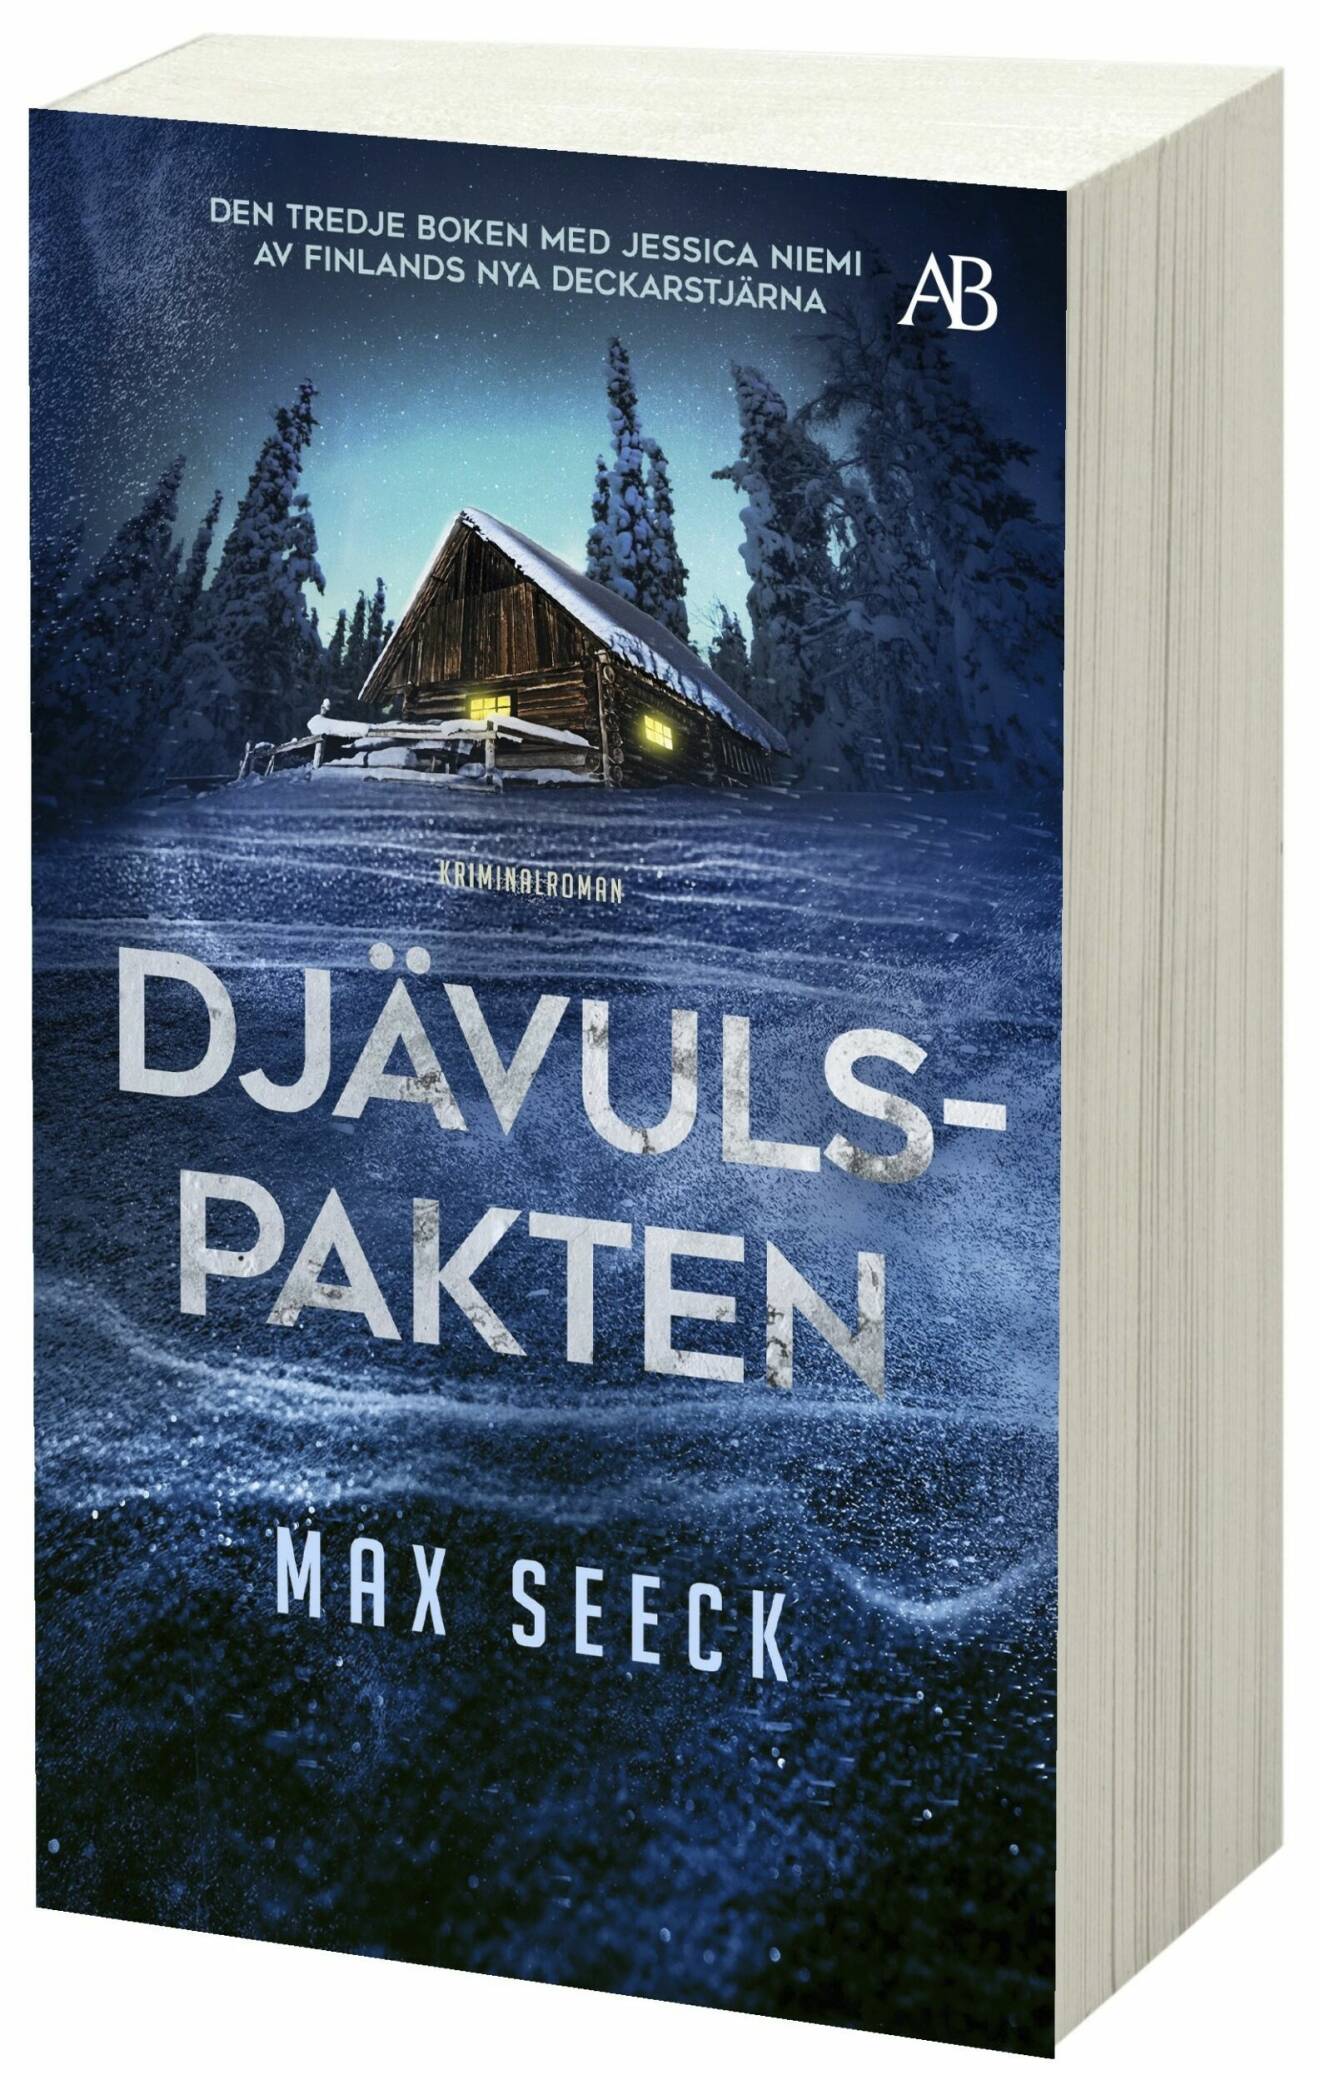 Djävulspakten av Max Seeck (Albert Bonniers förlag).